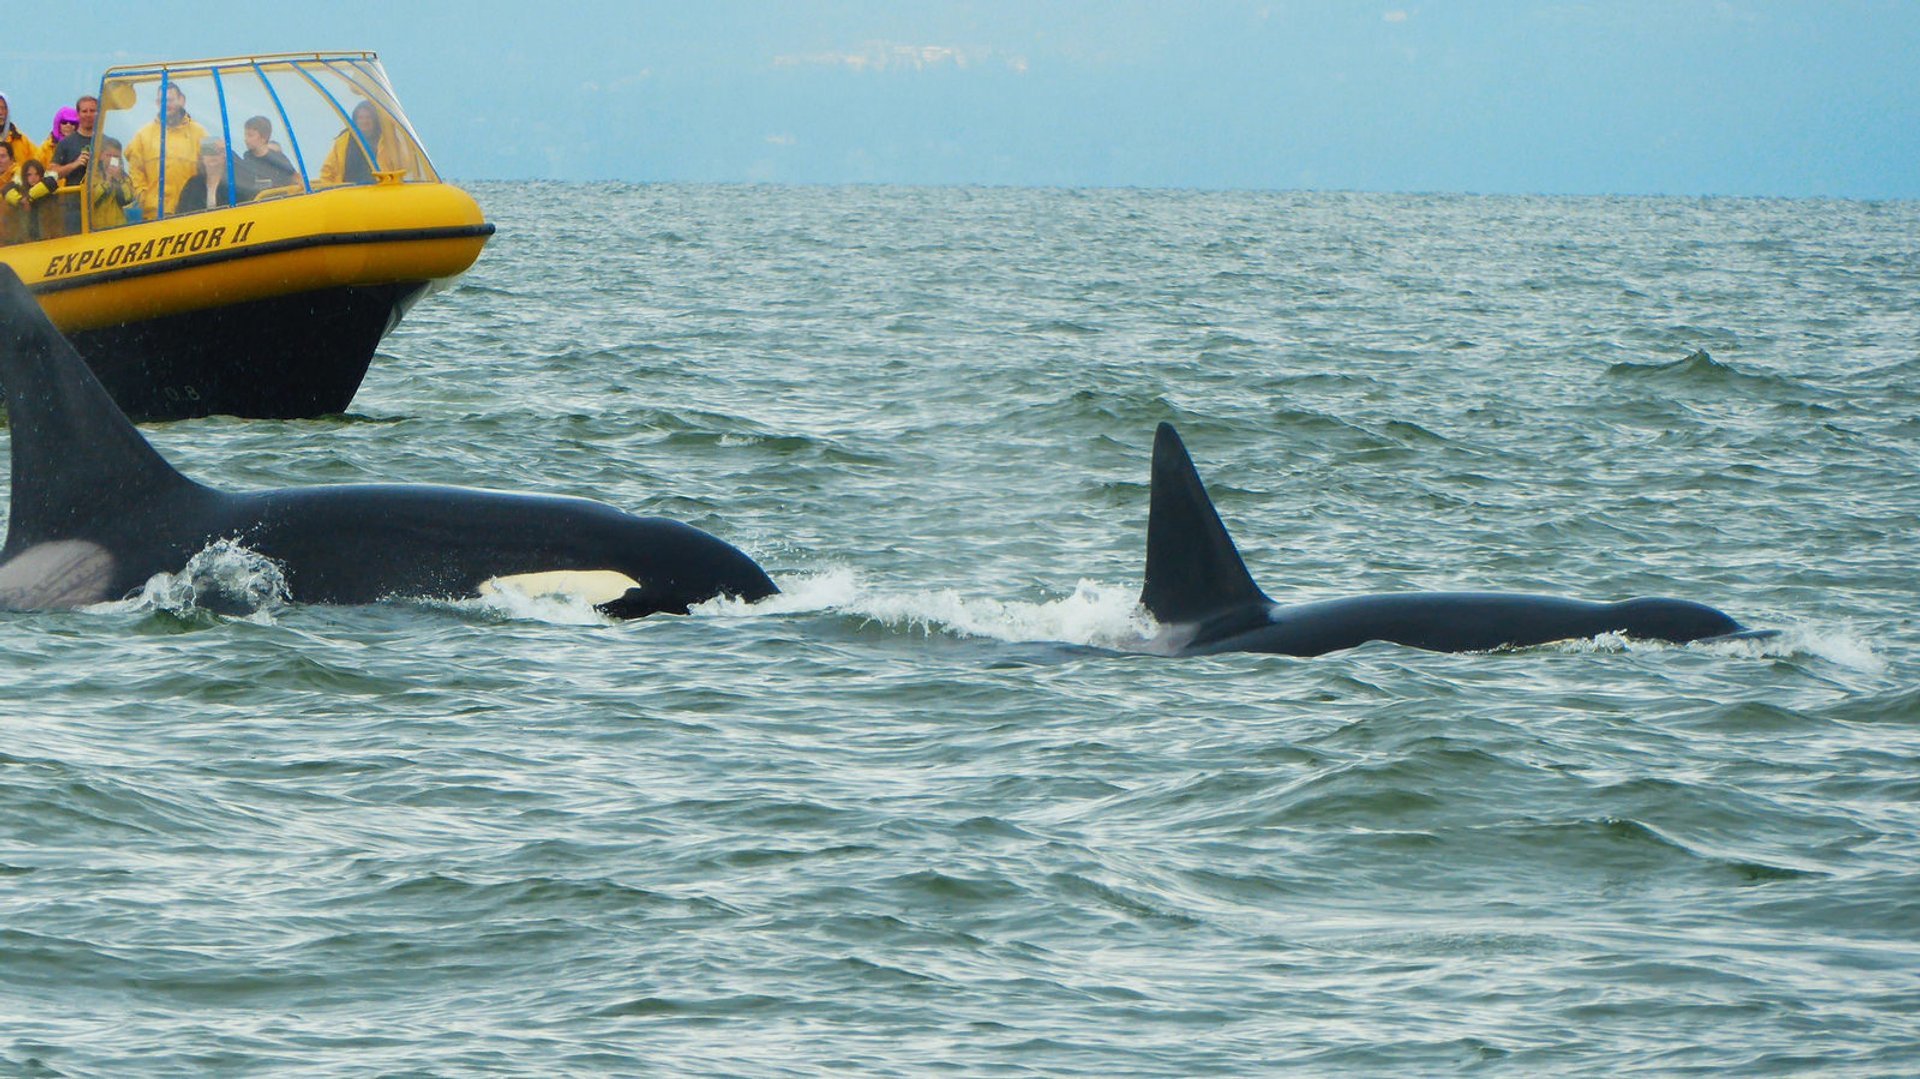 Excursión para ver ballenas (Fauna en Canadá) - Foro USA y Canada